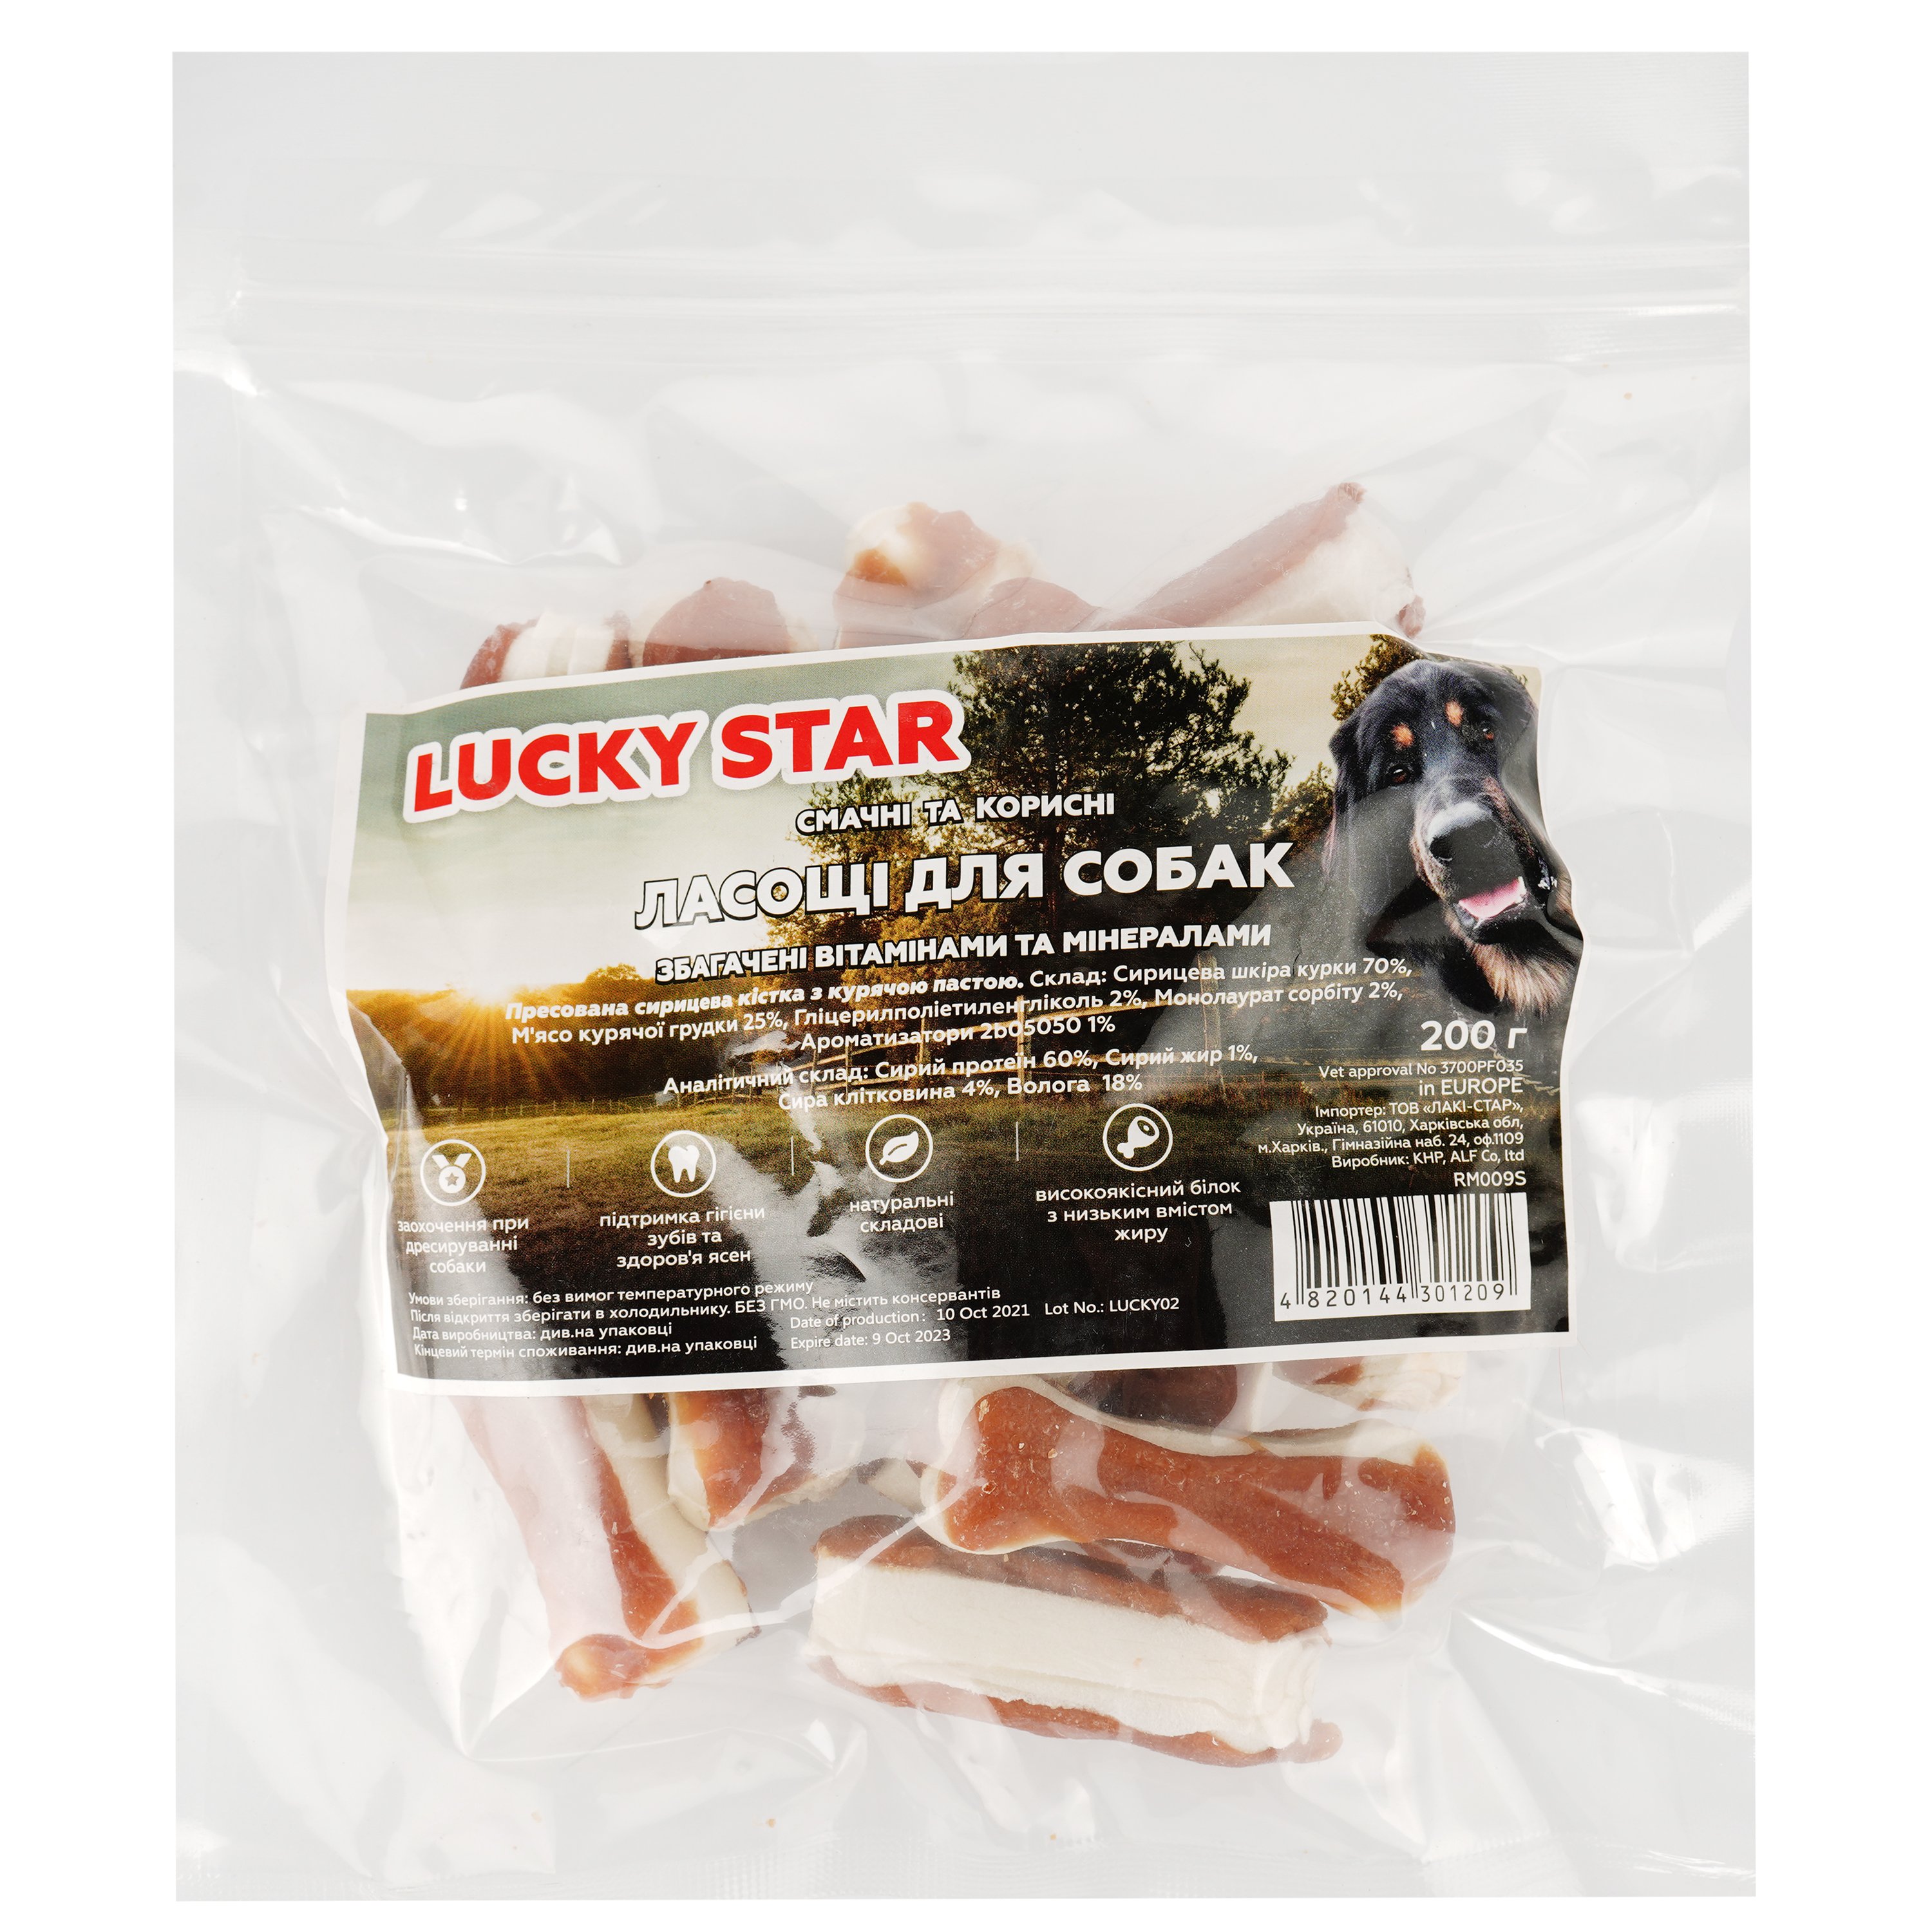 Ласощі для собак Lucky star Пресована сиром'ятна кістка з курячою пастою, 5,5 см, 200 г (RM009S) - фото 2